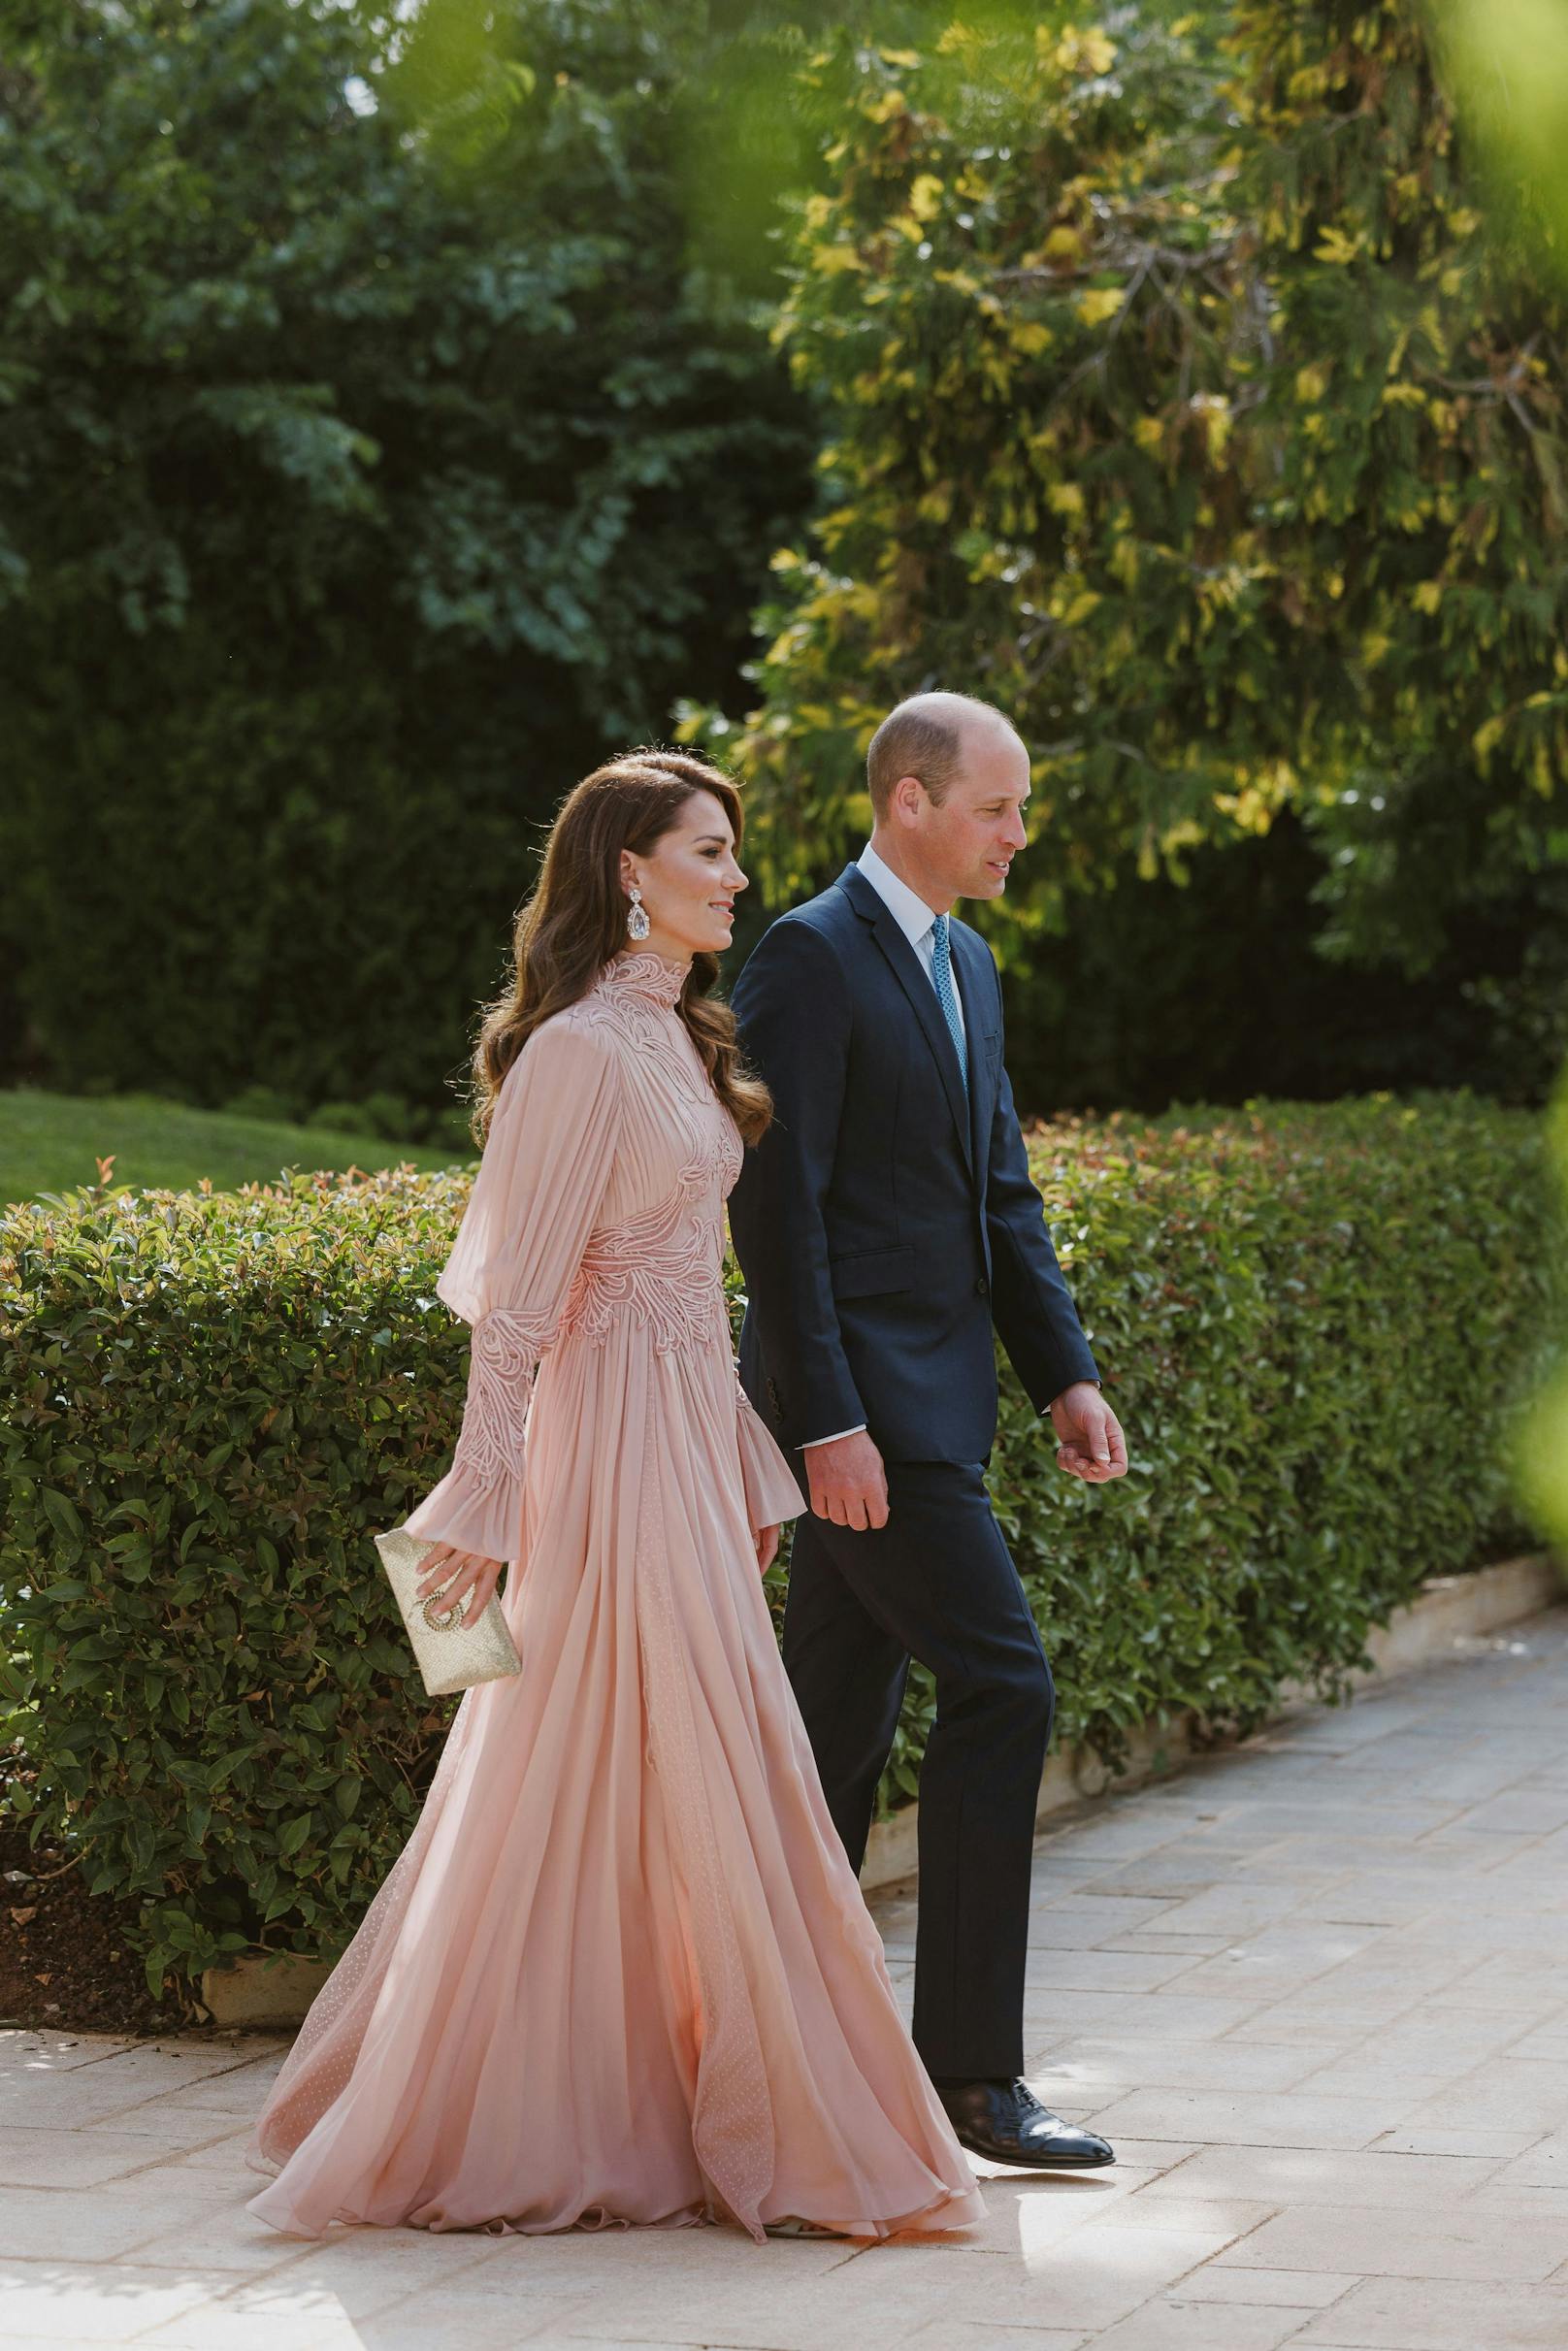 Bei der royalen Hochzeit des jordanischen Kronprinzen Hussein und Rajwa Al Saif trug Kate ein pastellfarbenes Kleid.